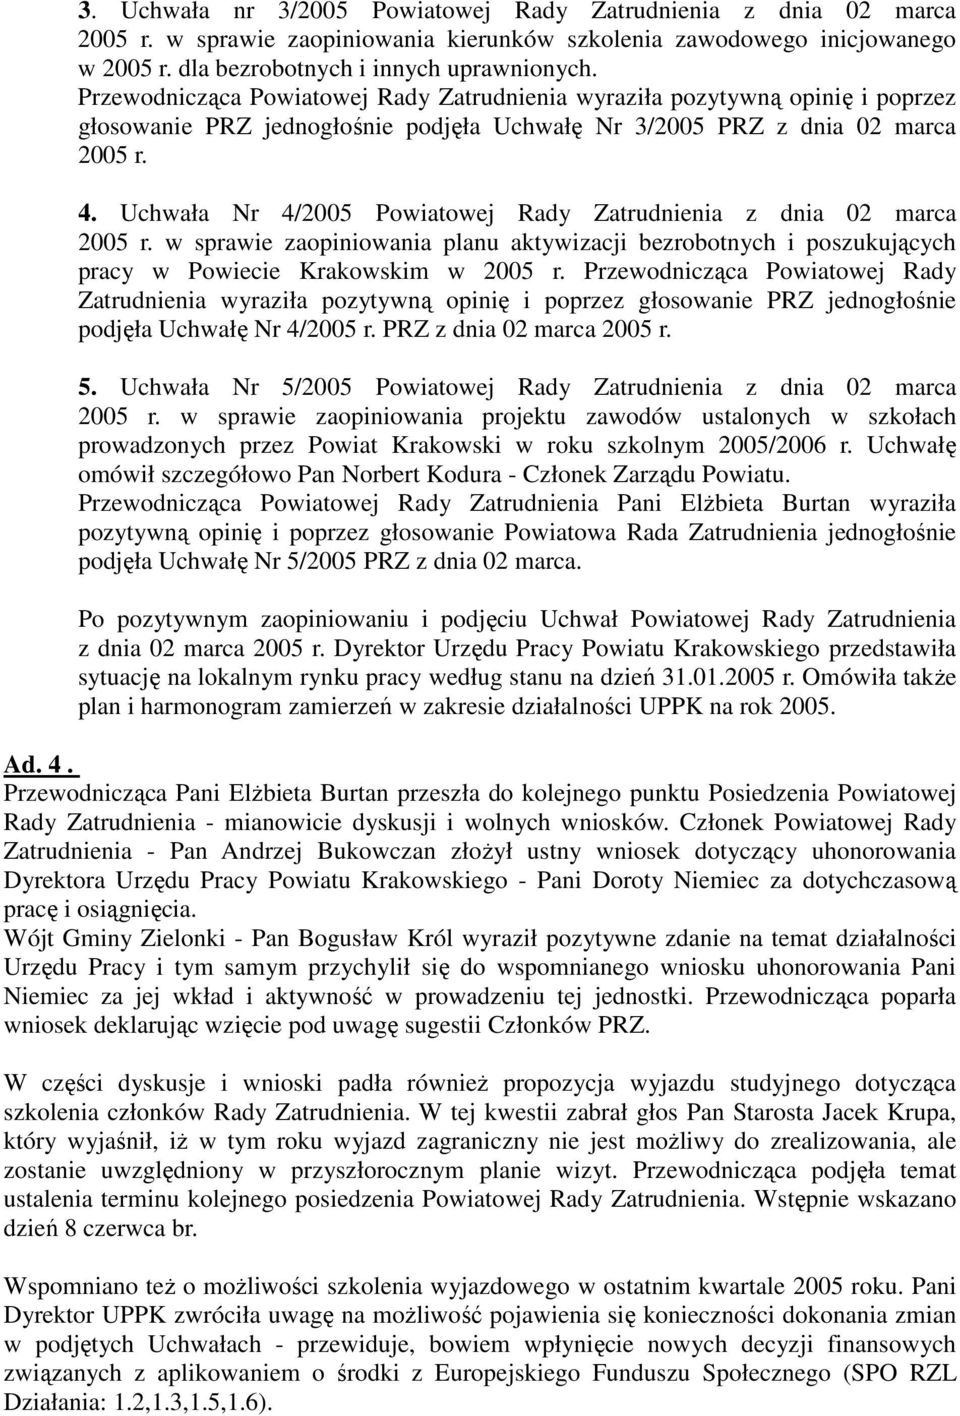 Uchwała Nr 4/2005 Powiatowej Rady Zatrudnienia z dnia 02 marca 2005 r. w sprawie zaopiniowania planu aktywizacji bezrobotnych i poszukujących pracy w Powiecie Krakowskim w 2005 r.